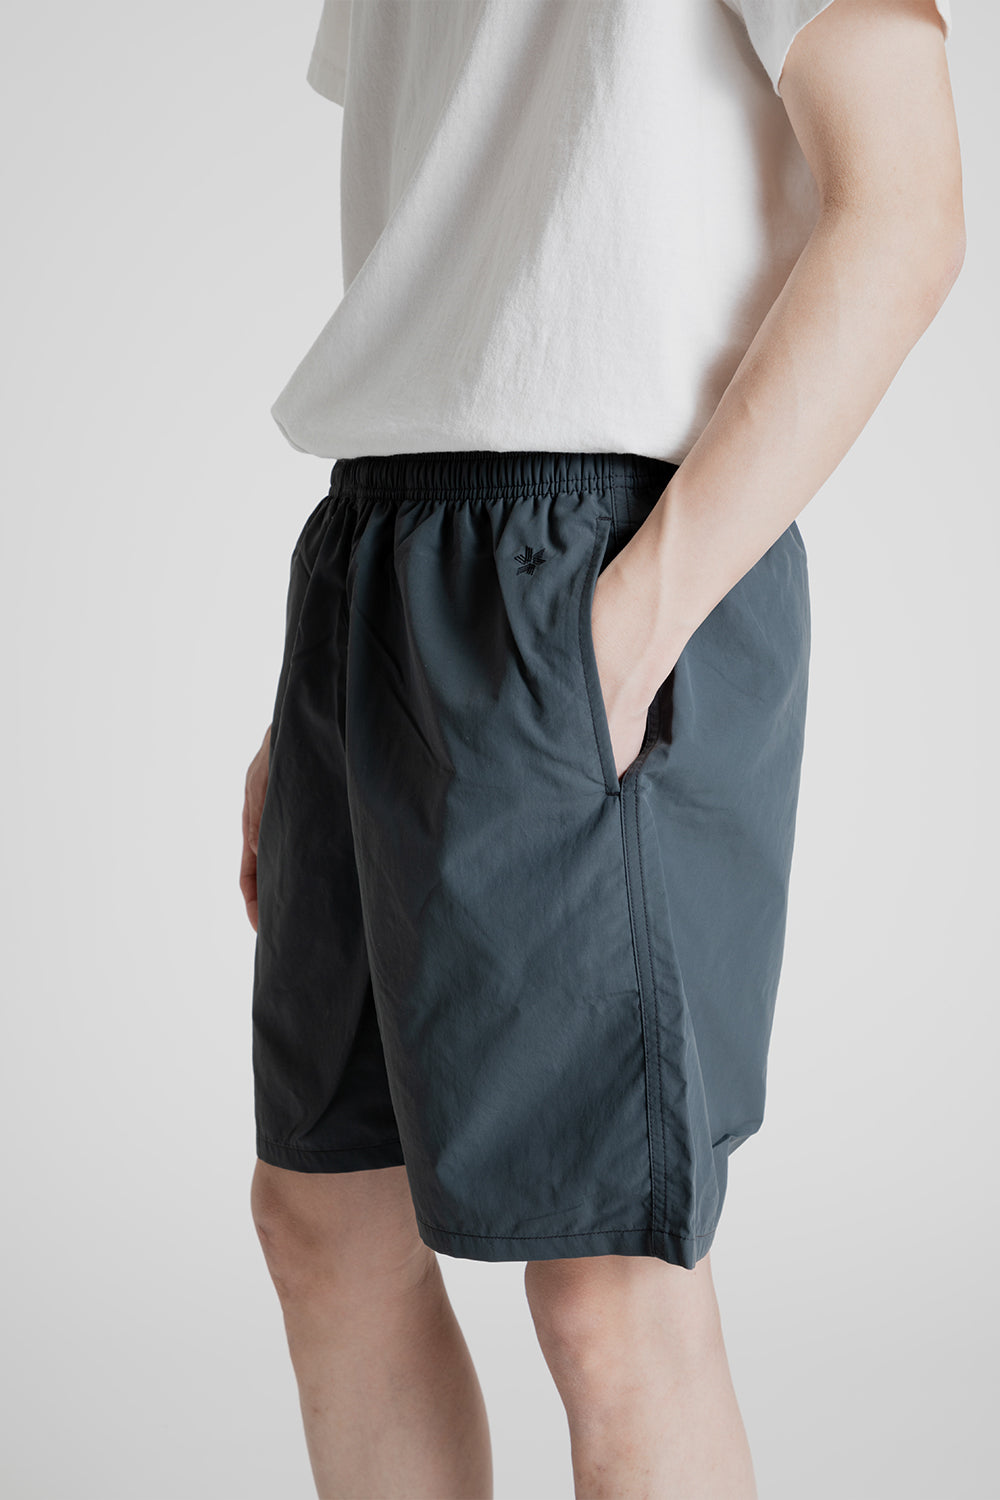 Goldwin Nylon Shorts 7 Inch in Dark Charcoal